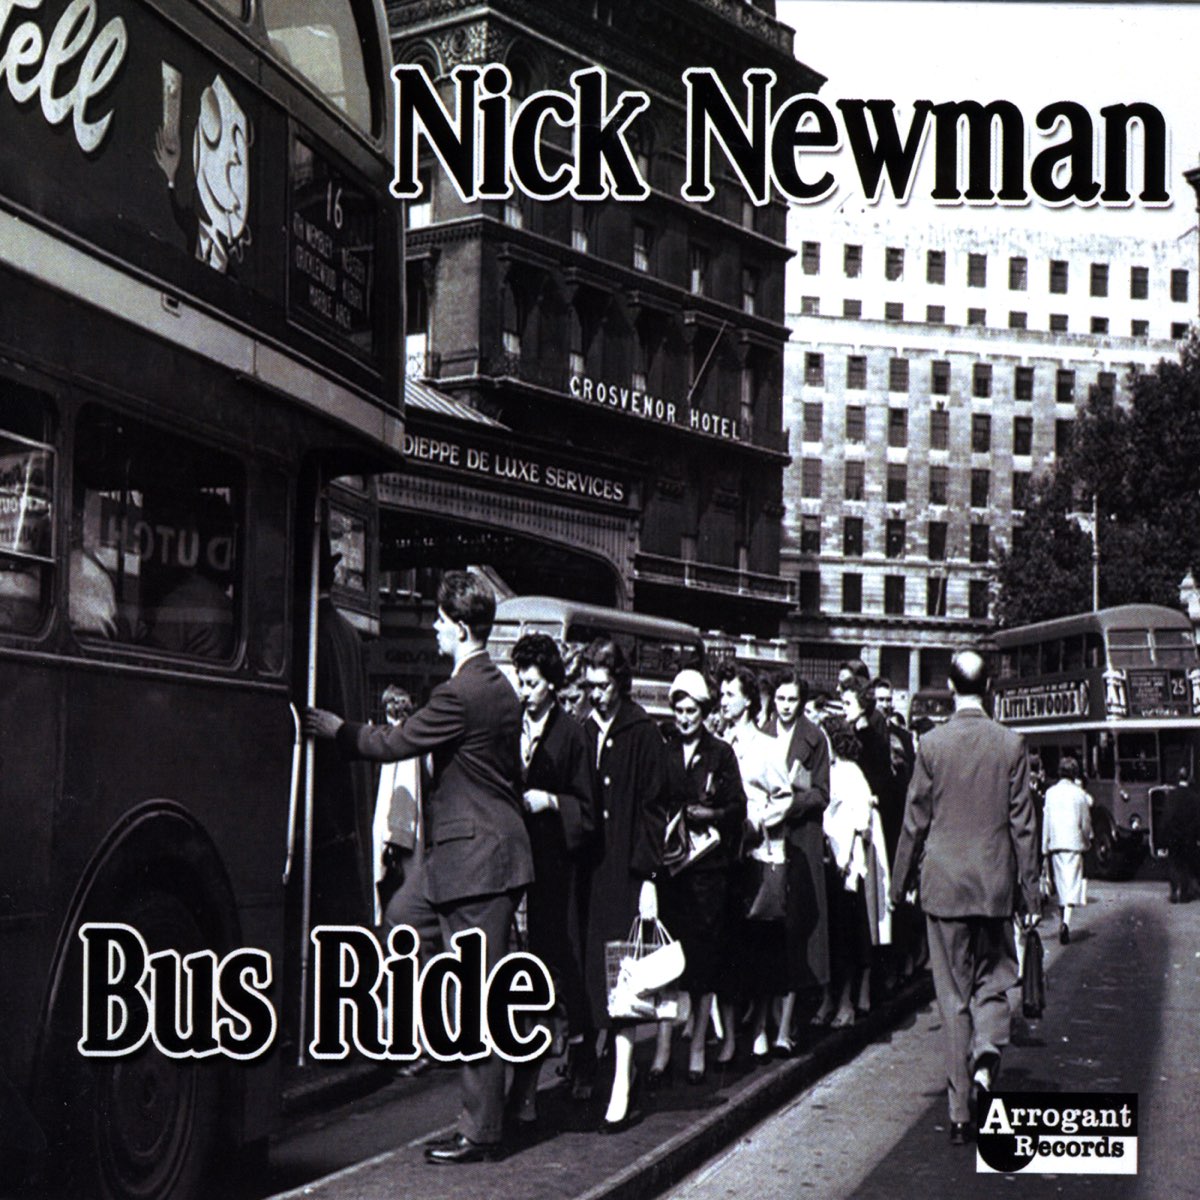 Nick rides. Nick Newman. Newman автобус.